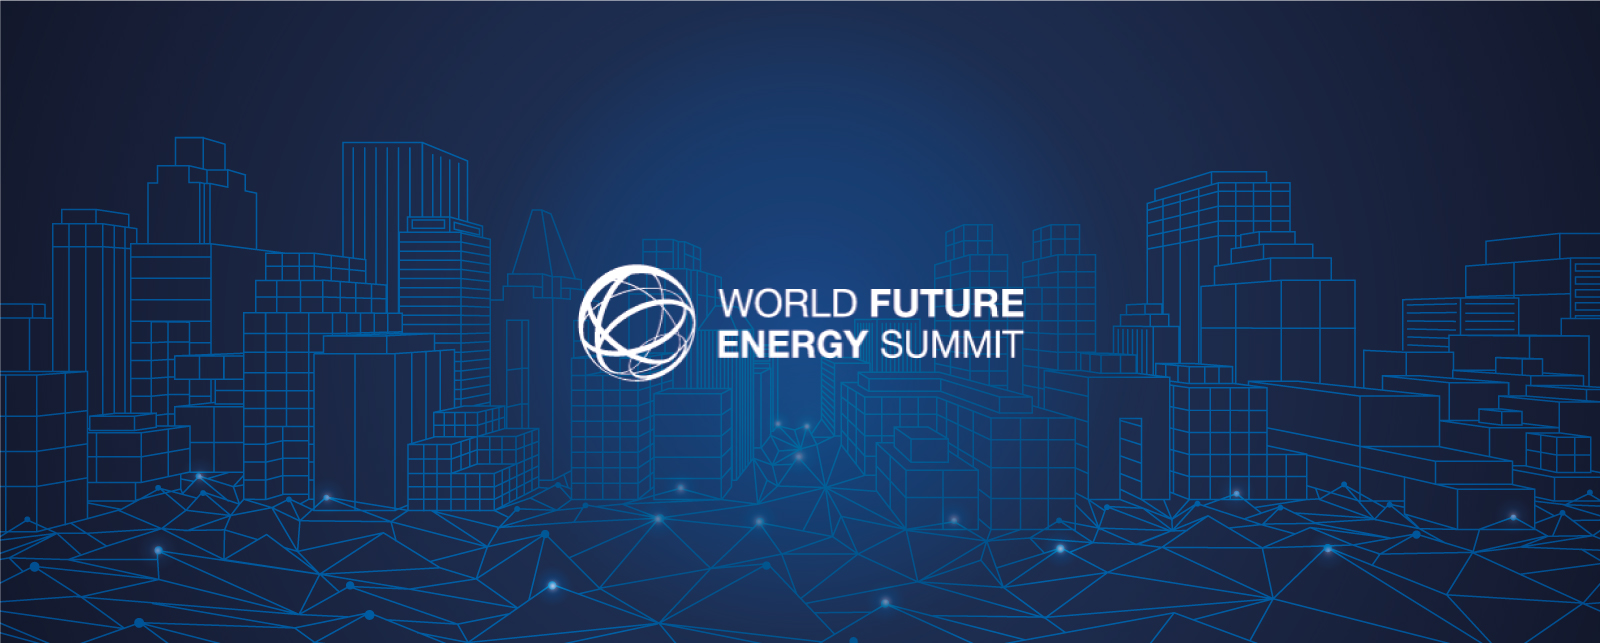 المشاركة في القمة العالمية لطاقة المستقبل يناير 2023